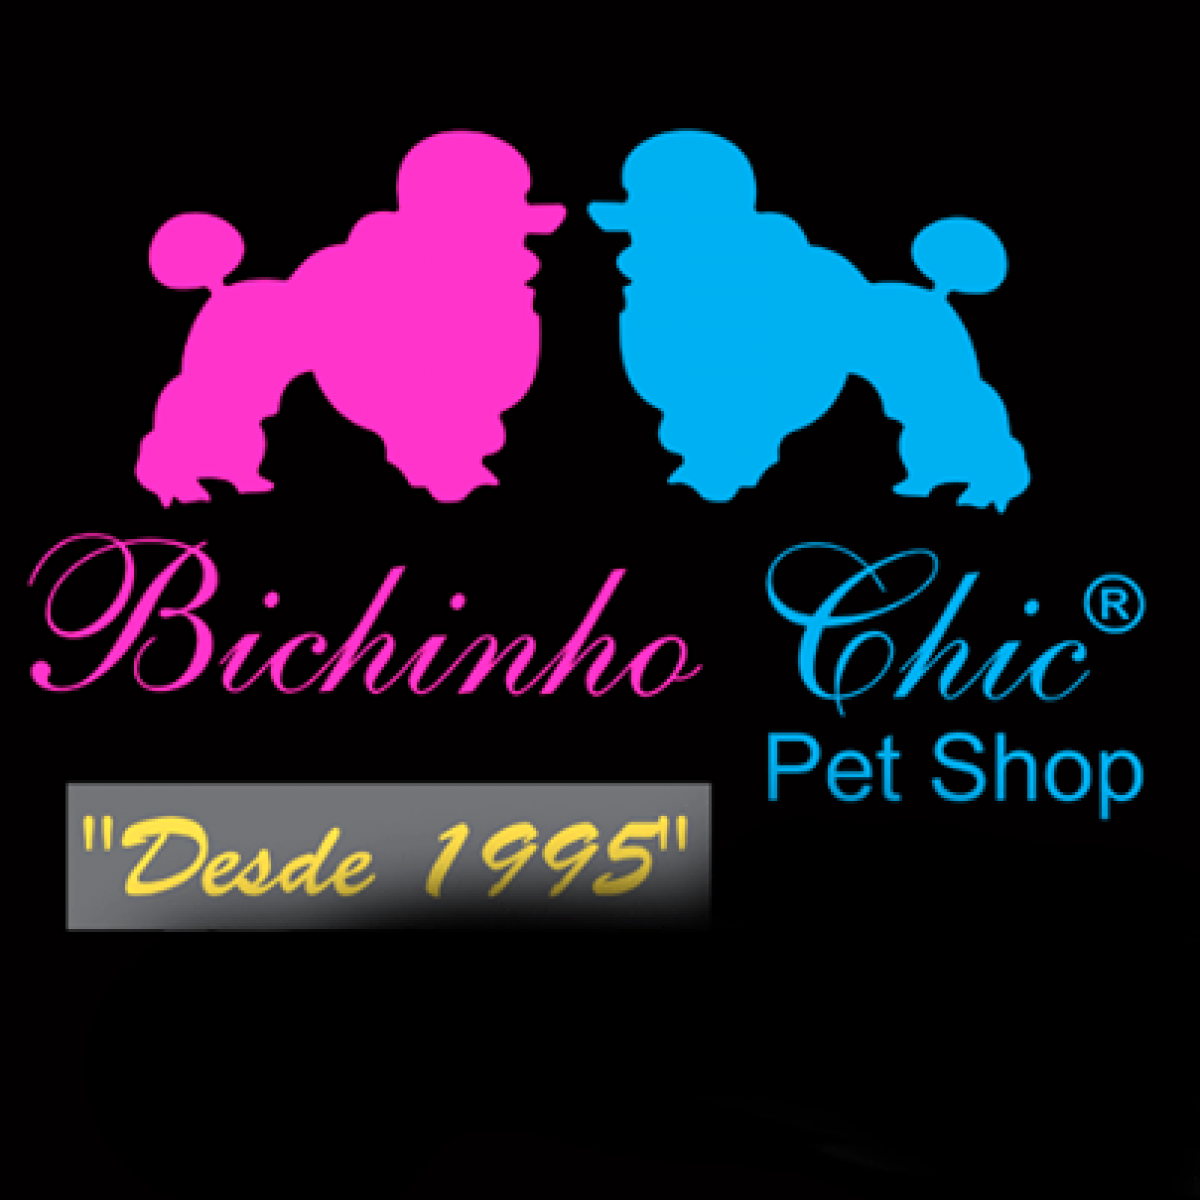 Franquia de Pet shop Bichinho Chic desde 1.995